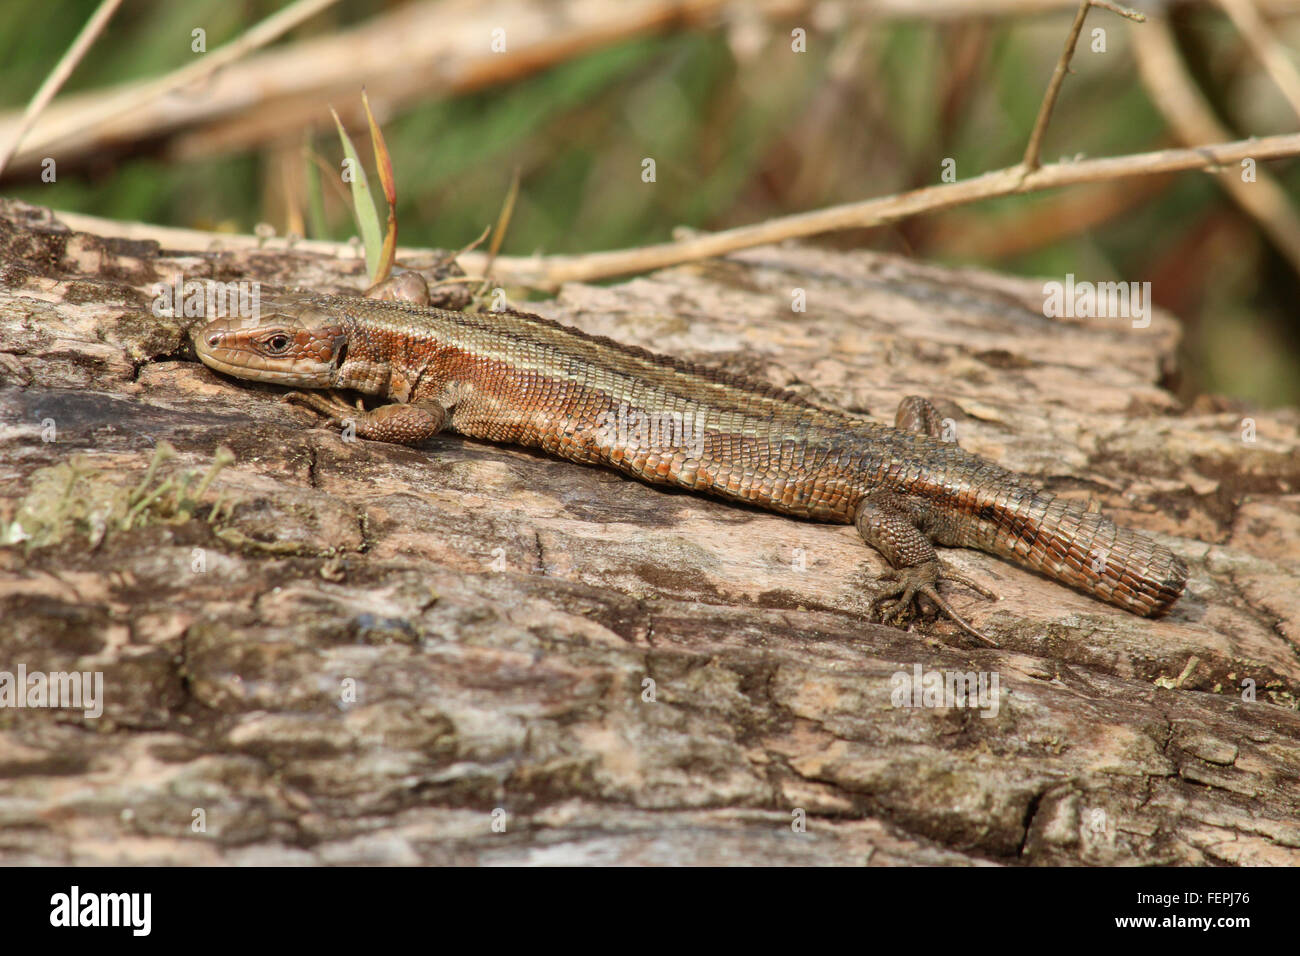 Comune Tailless Lizard crogiolarsi su un log. Foto Stock